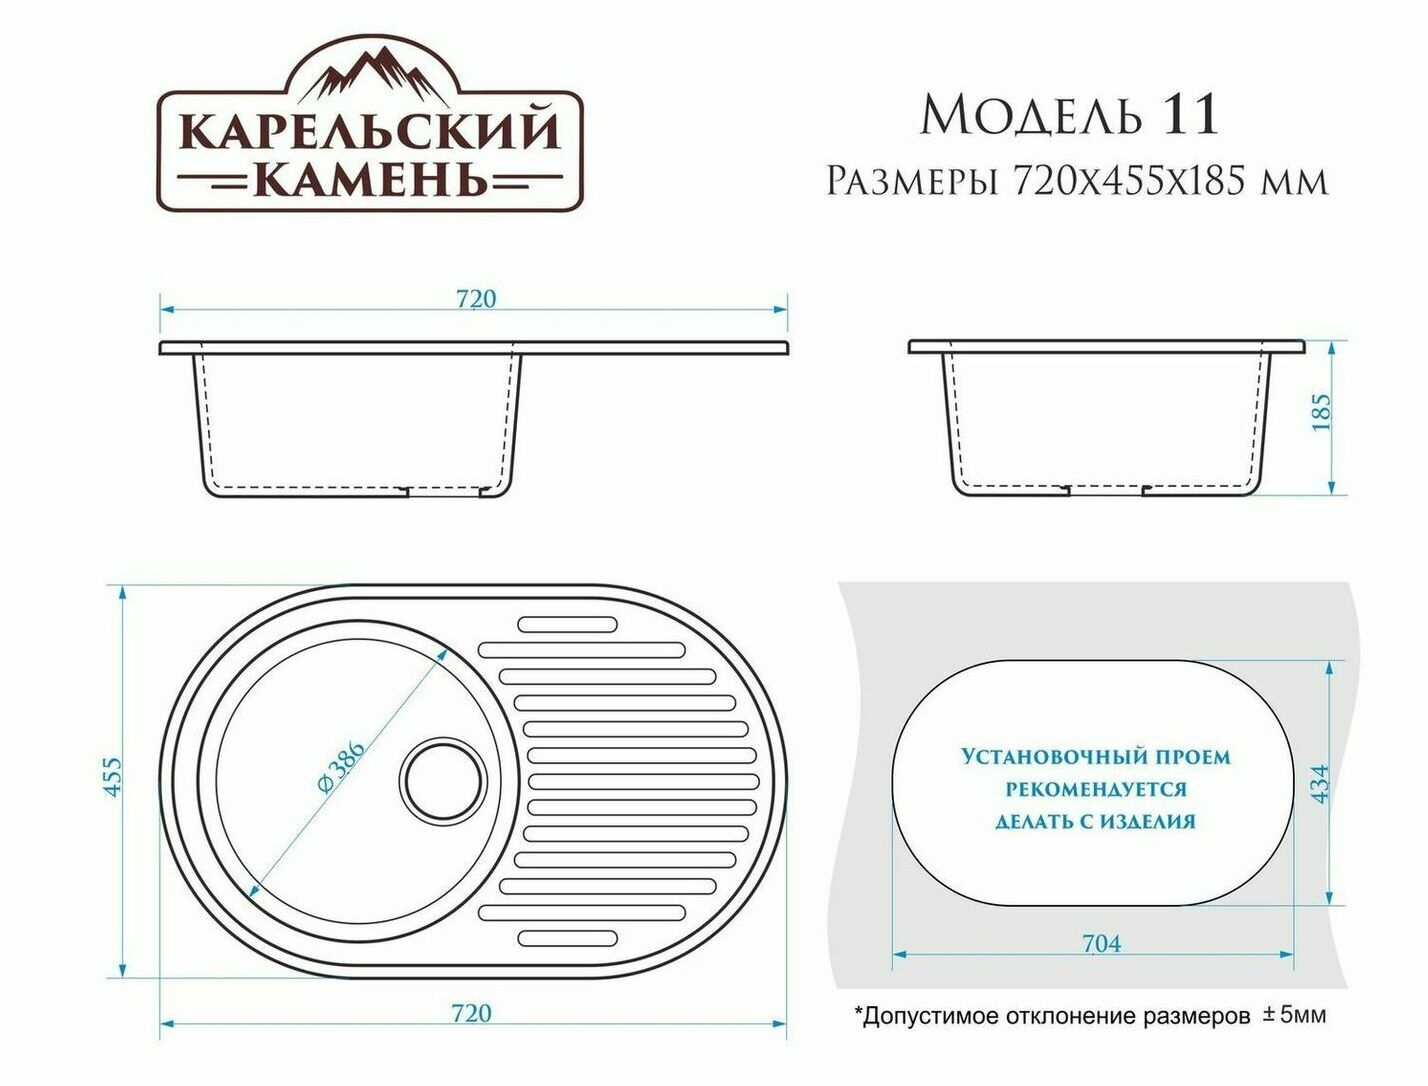 Кухонная мойка Марбакс (Marrbaxx) серия «Карельский камень», модель 11, матовая